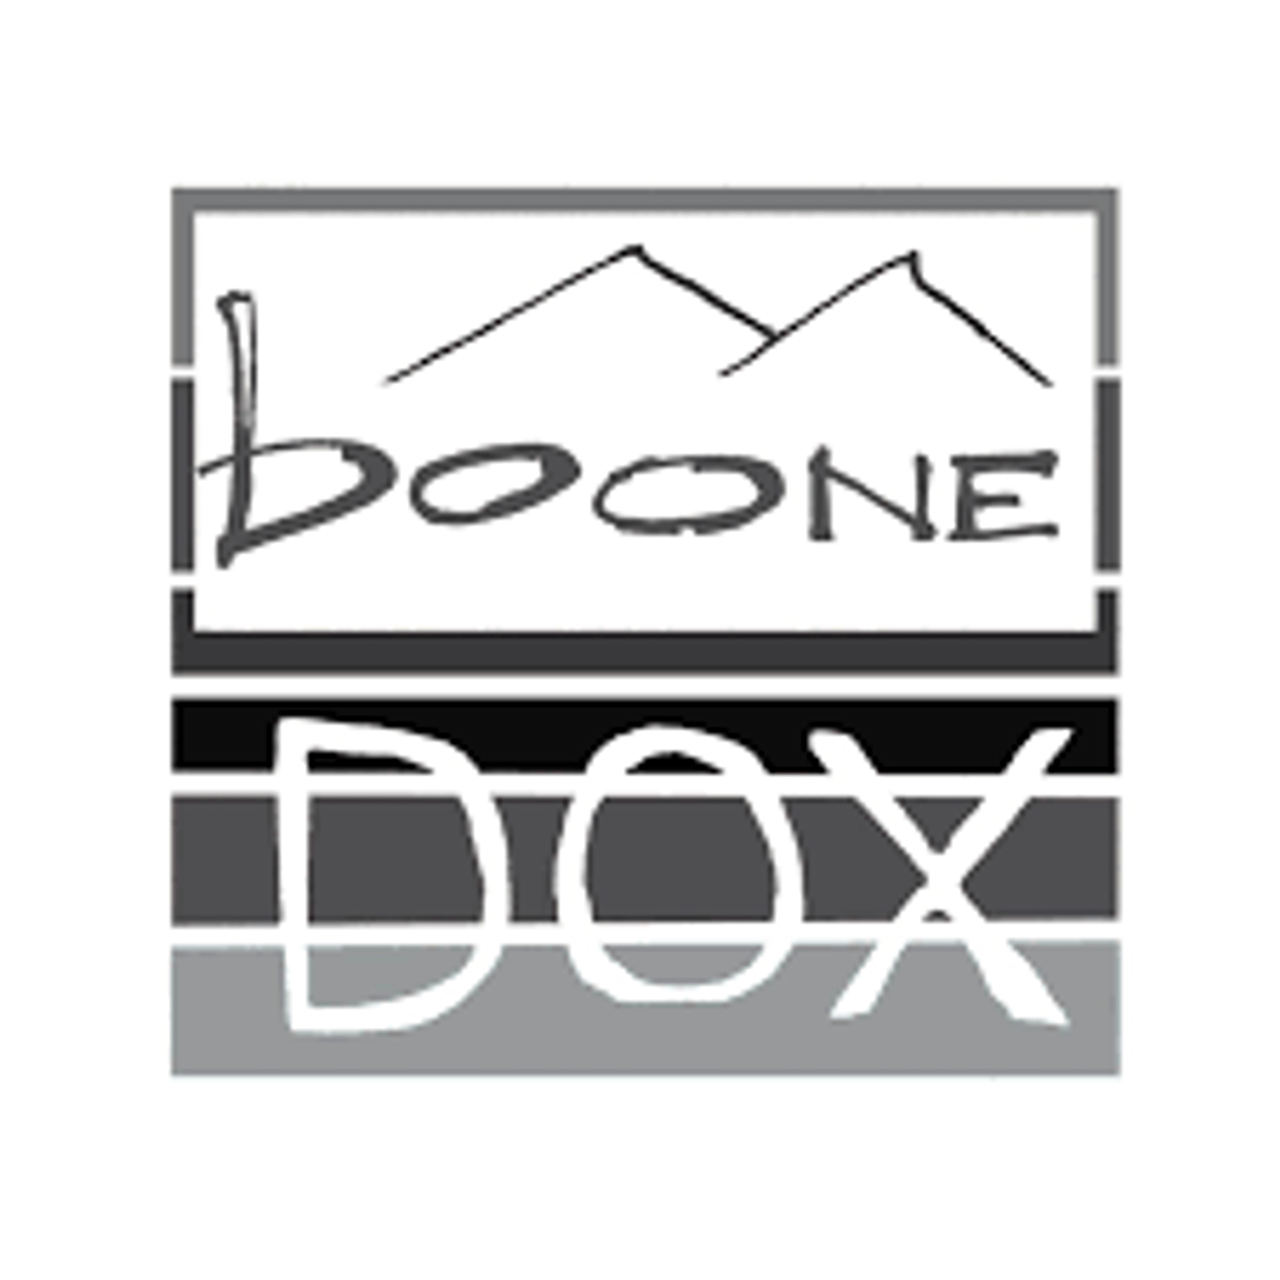 Boonedox